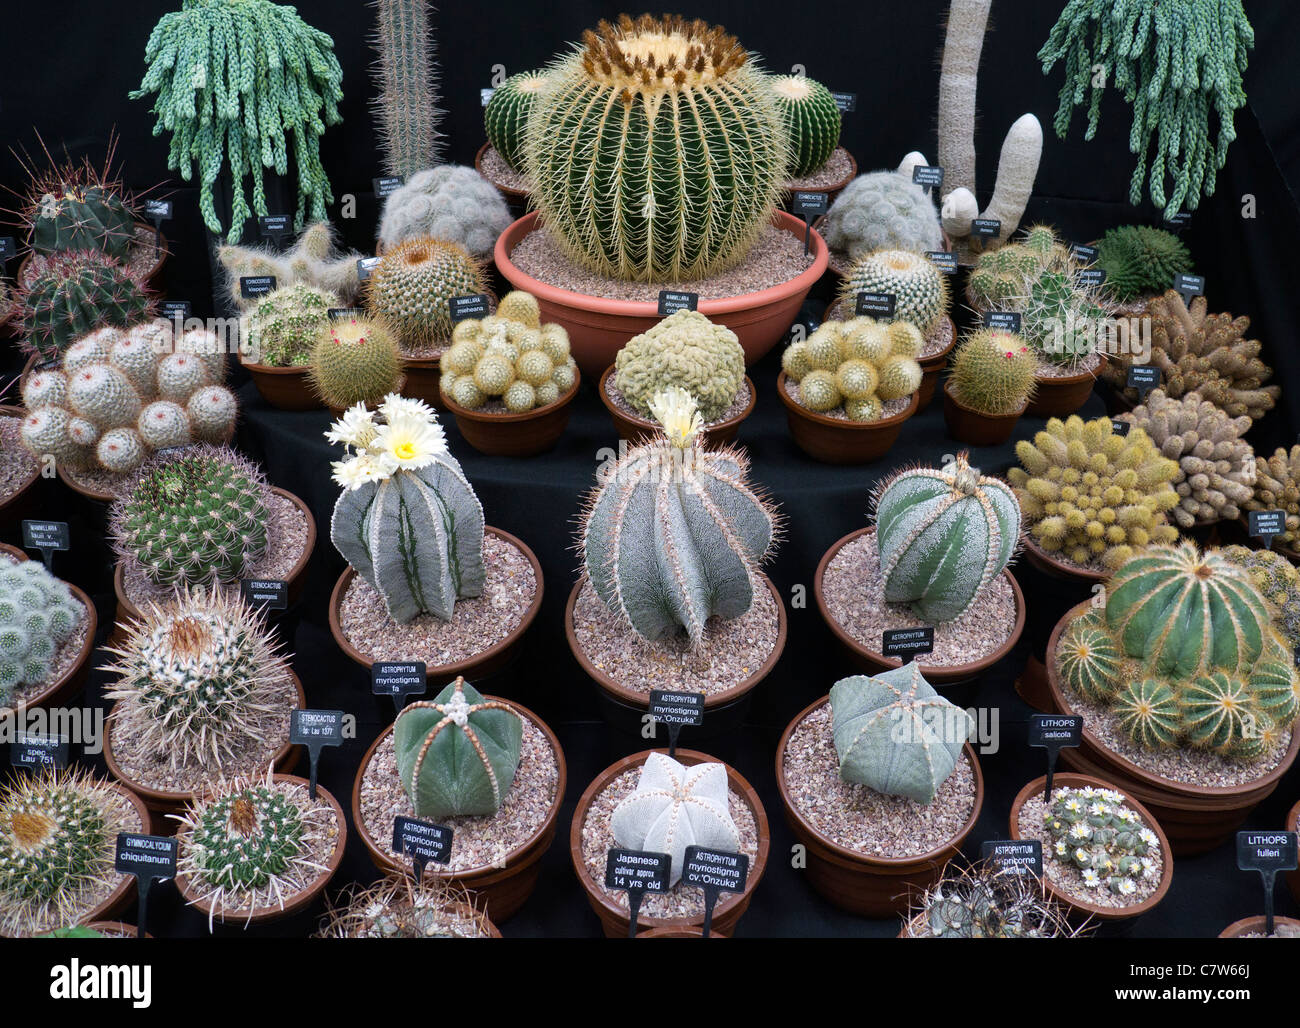 Malvern Autumn Show, England - display of Cacti Stock Photo